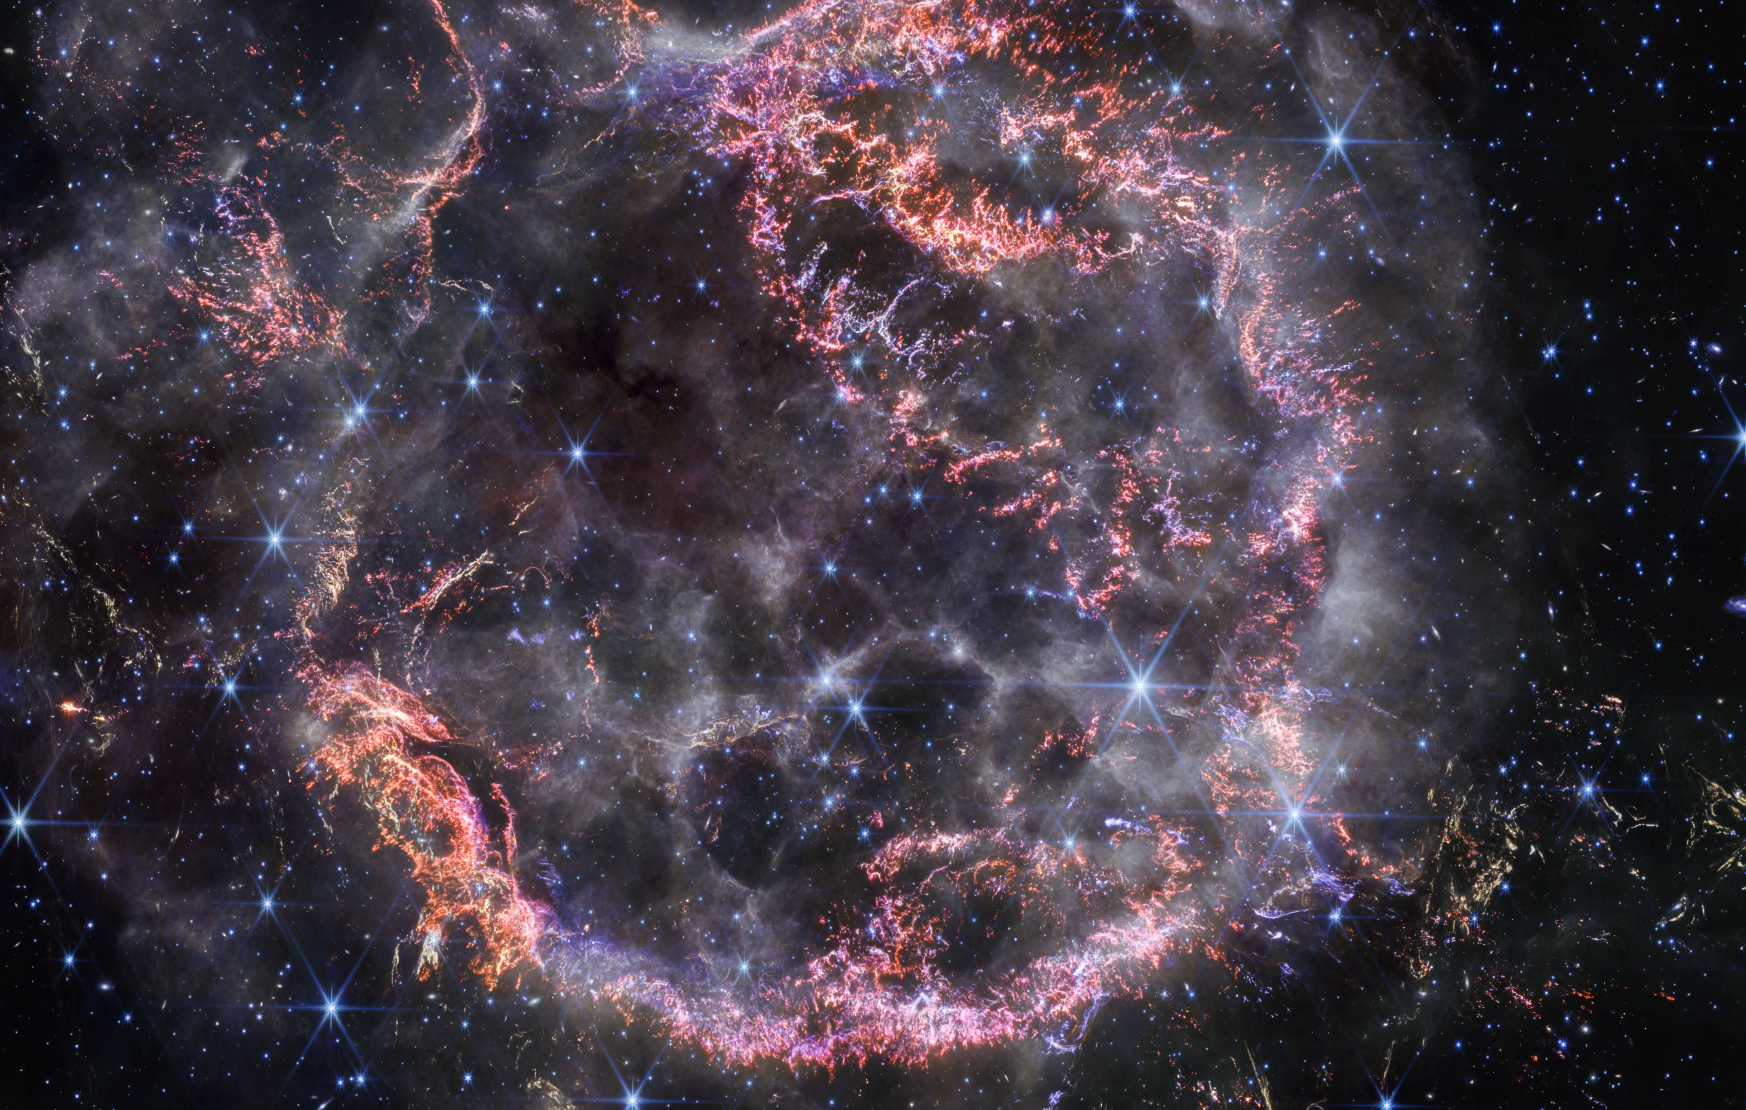 Une nouvelle image haute définition de la NIRCam (Near-Infrared Camera) du télescope spatial James-Webb de la Nasa dévoile des détails complexes du reste de la supernova Cassiopée A (Cas A) et montre la coque de matière en expansion qui heurte le gaz rejeté par l'étoile avant qu'elle n'explose. Les couleurs les plus visibles dans la dernière image de Webb sont des touffes d’orange vif et de rose clair qui constituent la coque interne du reste de la supernova. Ces minuscules nœuds de gaz, composés de soufre, d’oxygène, d’argon et de néon provenant de l’étoile elle-même, ne sont détectables que par la résolution exquise du NIRCam et donnent aux chercheurs une idée de la façon dont l’étoile mourante s’est brisée comme du verre lorsqu’elle a explosé.La périphérie de la coque intérieure principale ressemble à la fumée d’un feu de camp. Cela marque l'endroit où le matériau éjecté de l'étoile explosée s'enfonce dans le matériau circumstellaire environnant. Les chercheurs affirment que cette couleur blanche est la lumière du rayonnement synchrotron, généré par des particules chargées se déplaçant à des vitesses extrêmement élevées en spirale autour des lignes de champ magnétique.Plusieurs échos lumineux sont également visibles sur cette image, notamment dans le coin inférieur droit. C’est l'endroit que la lumière de l’explosion de l’étoile a atteint il y a longtemps, et ce sont des chauffées poussières qui y brillent en se refroidissant. © Nasa, ESA, CSA, STScI, Danny Milisavljevic (Purdue University), Ilse De Looze (UGent), Tea Temim (Princeton University)